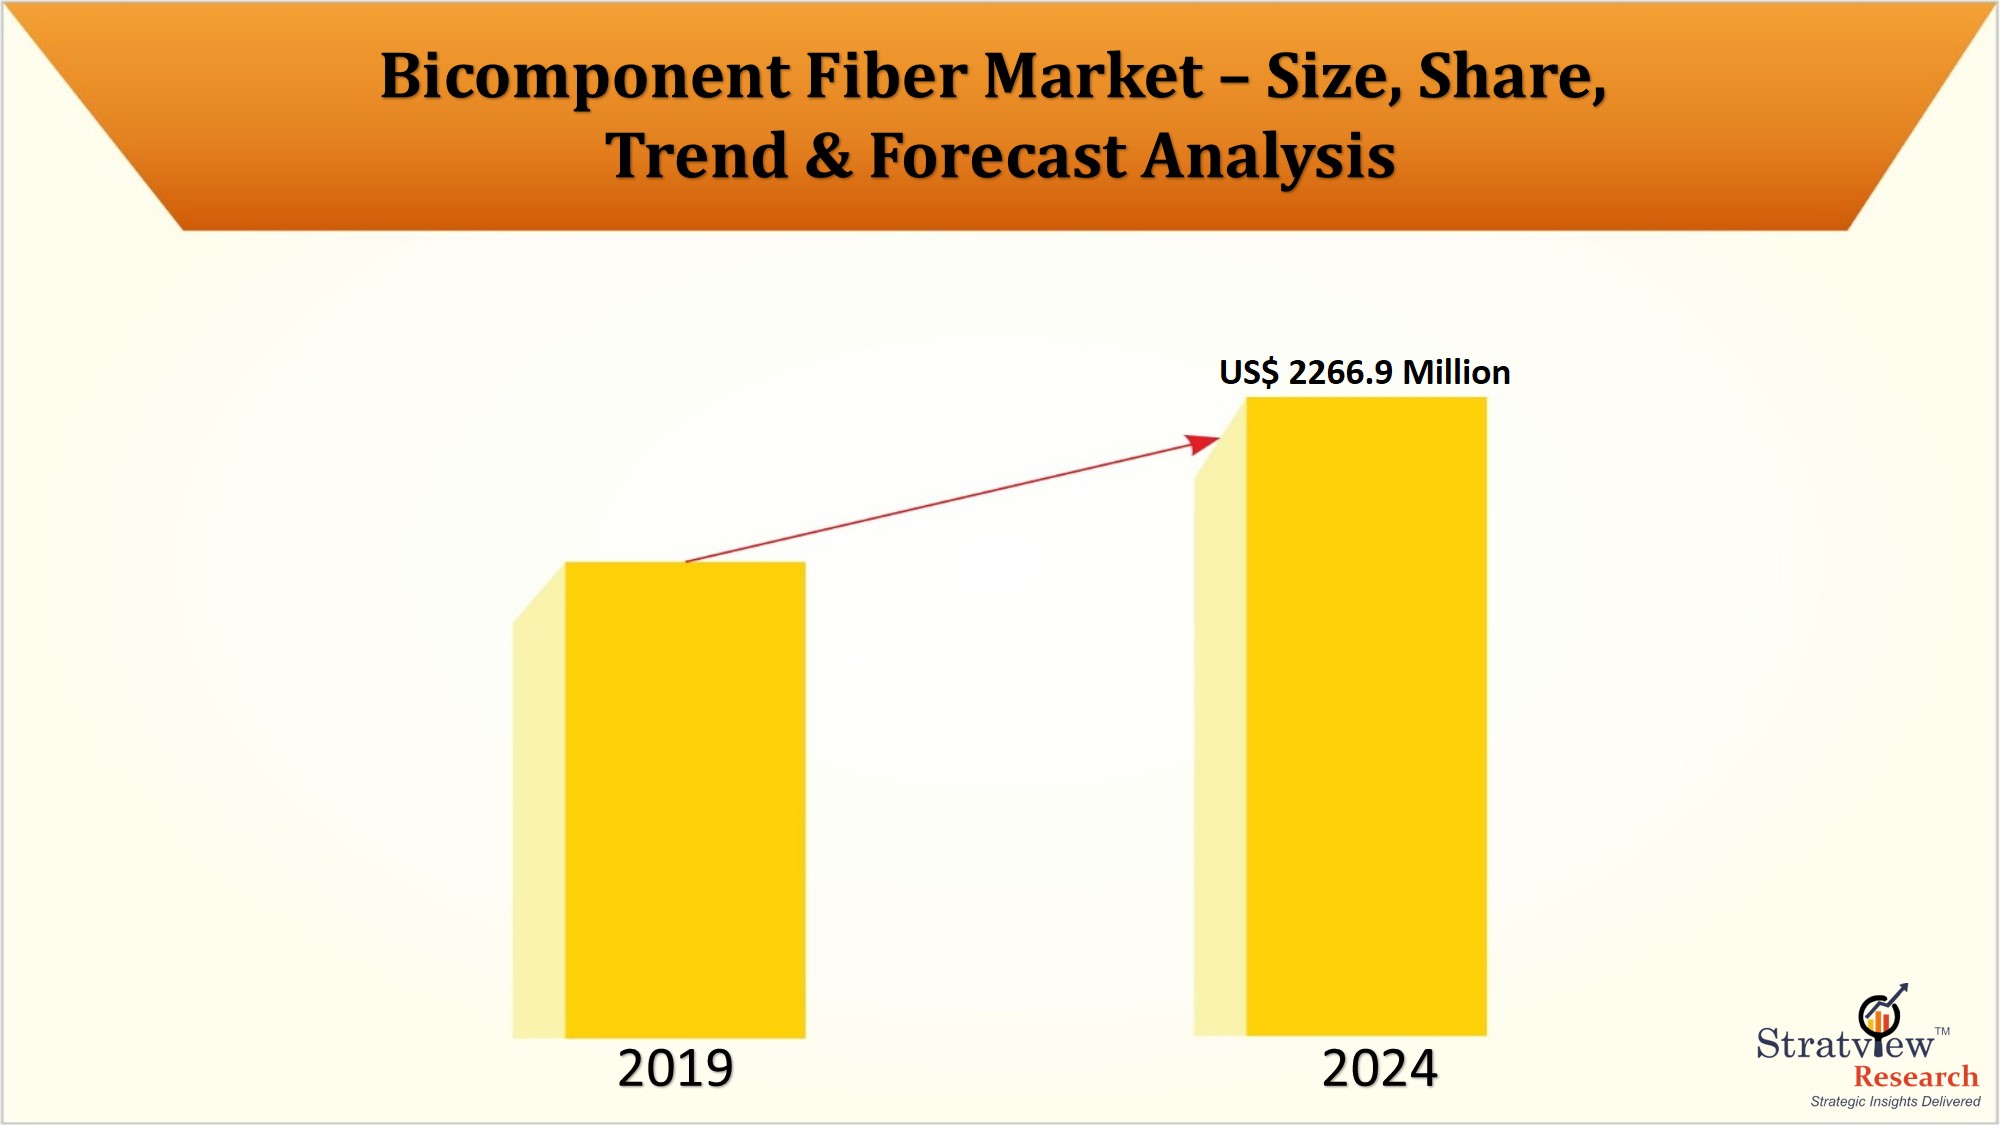 Bicomponent Fiber Market to reach US$ 2266.9 Million in 2024